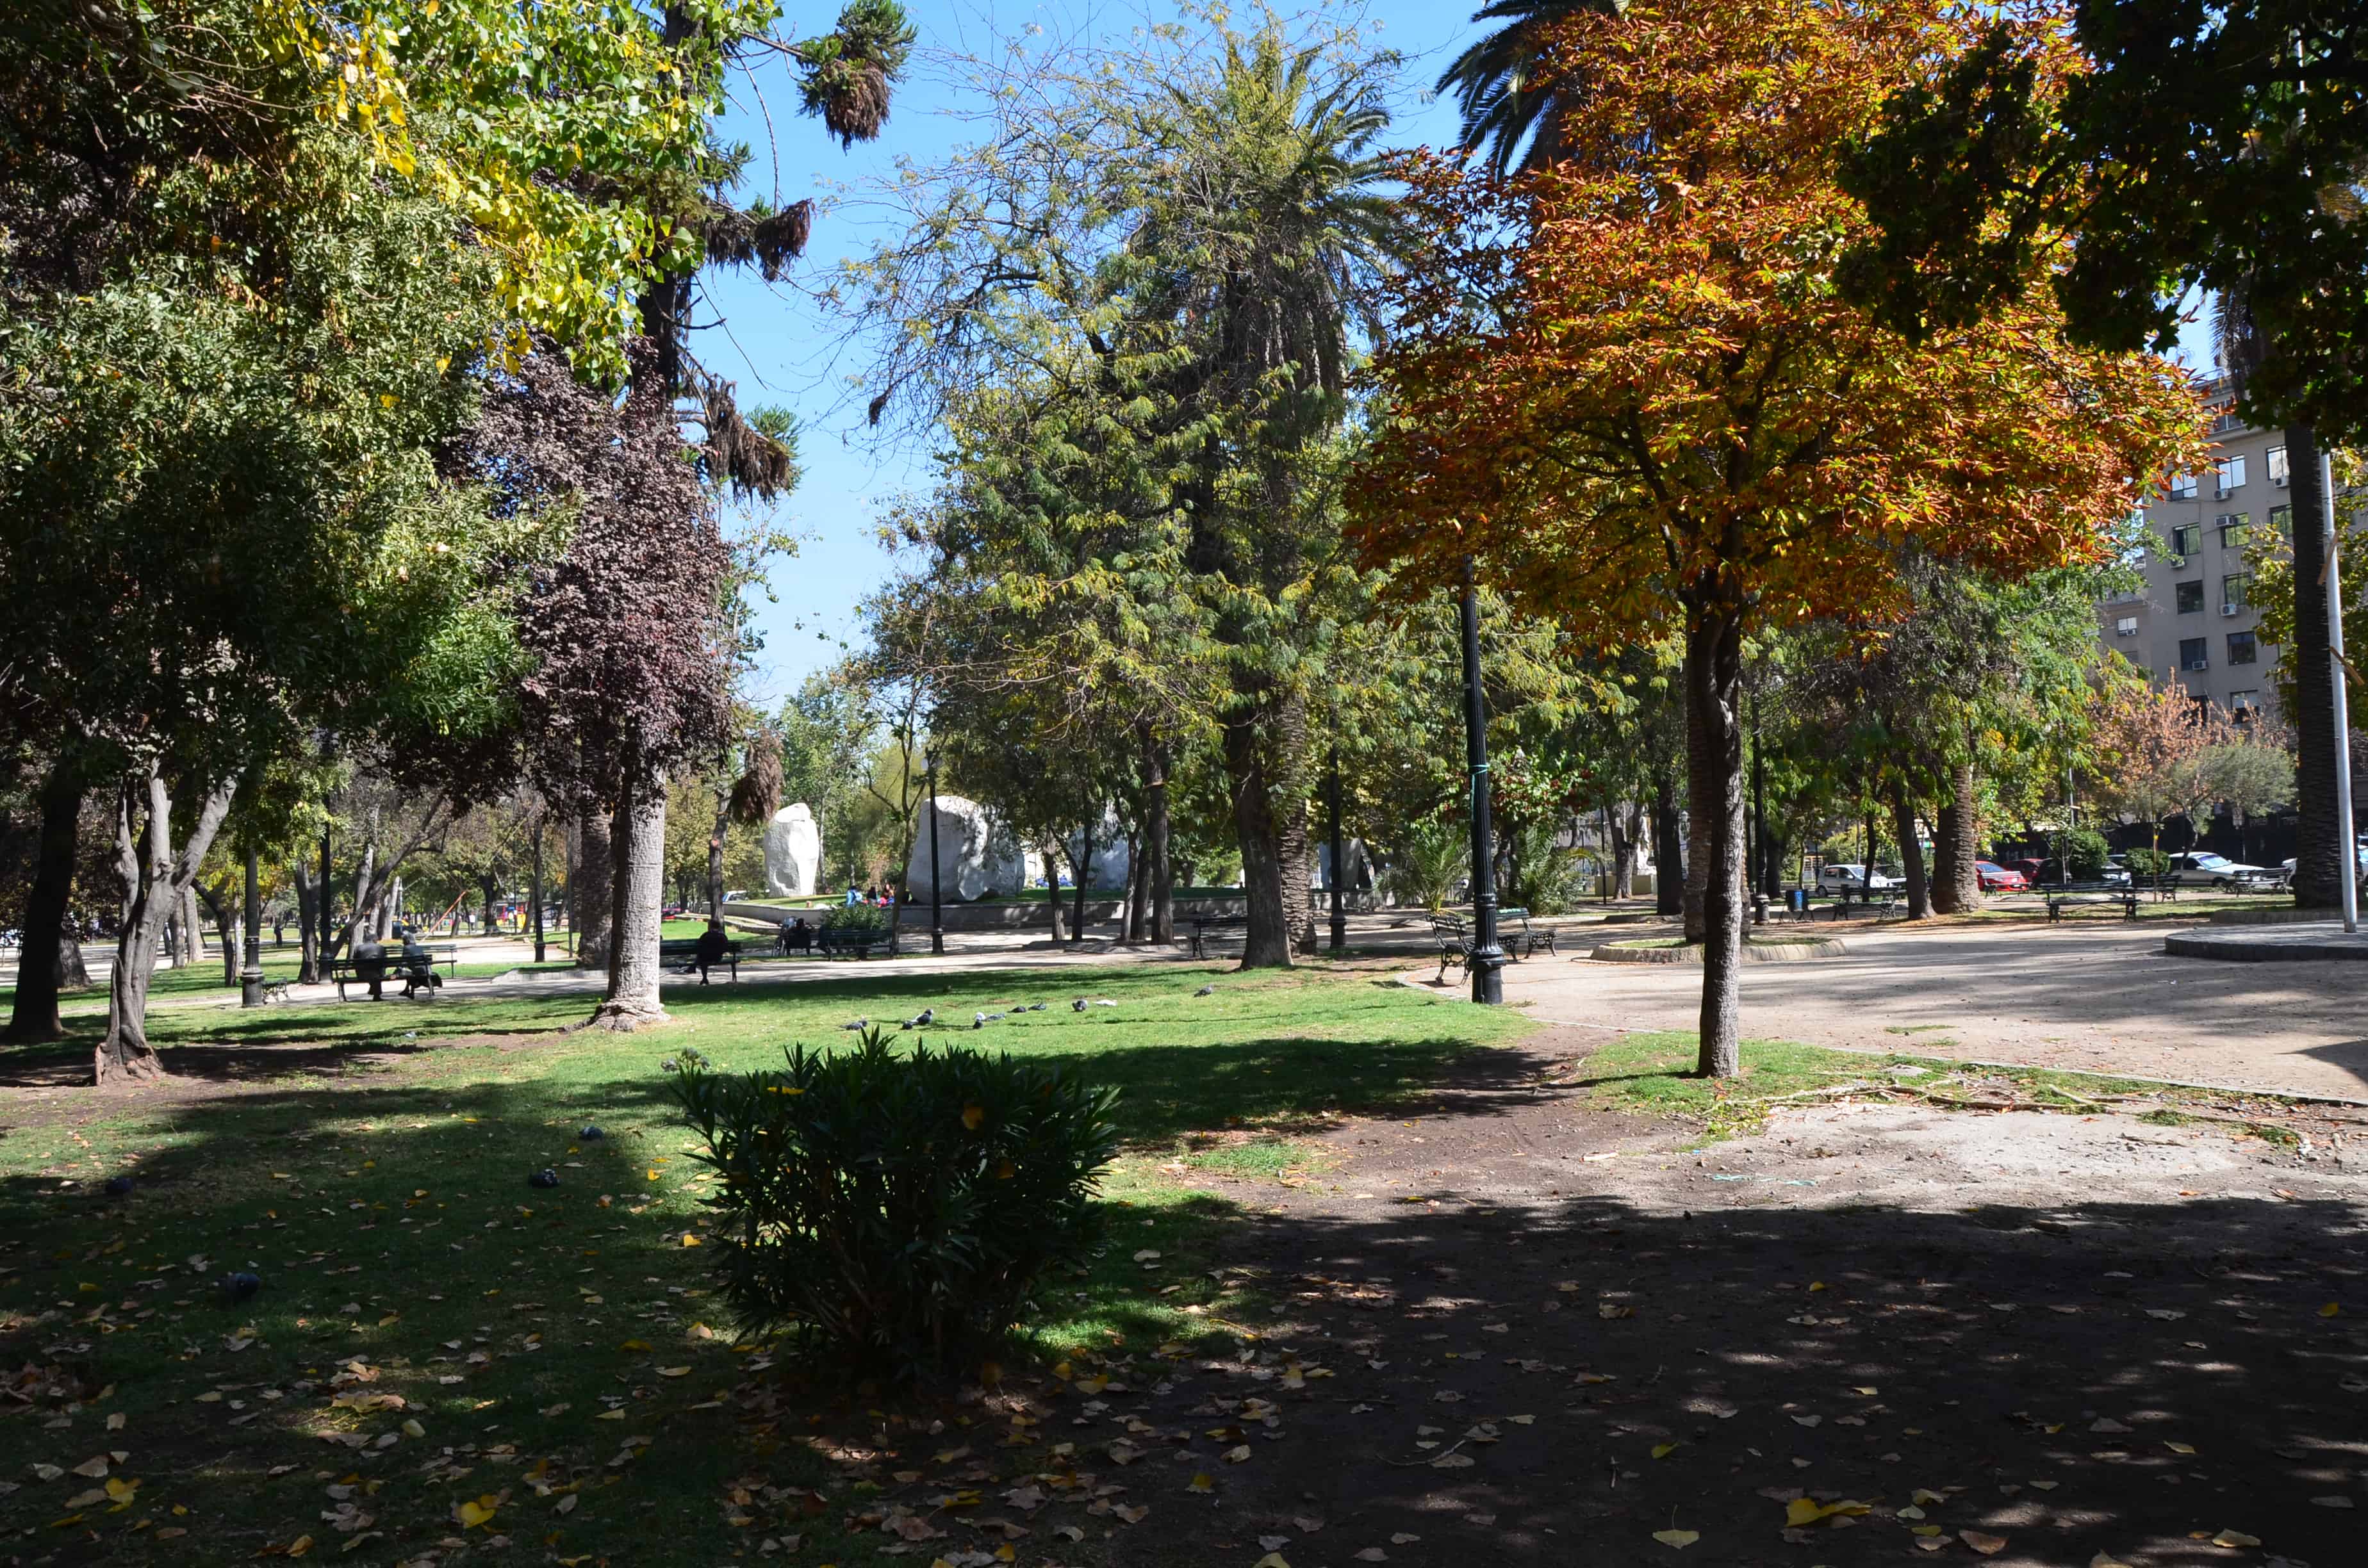 Parque Diego de Almagro in Barrio Dieciocho, Santiago de Chile